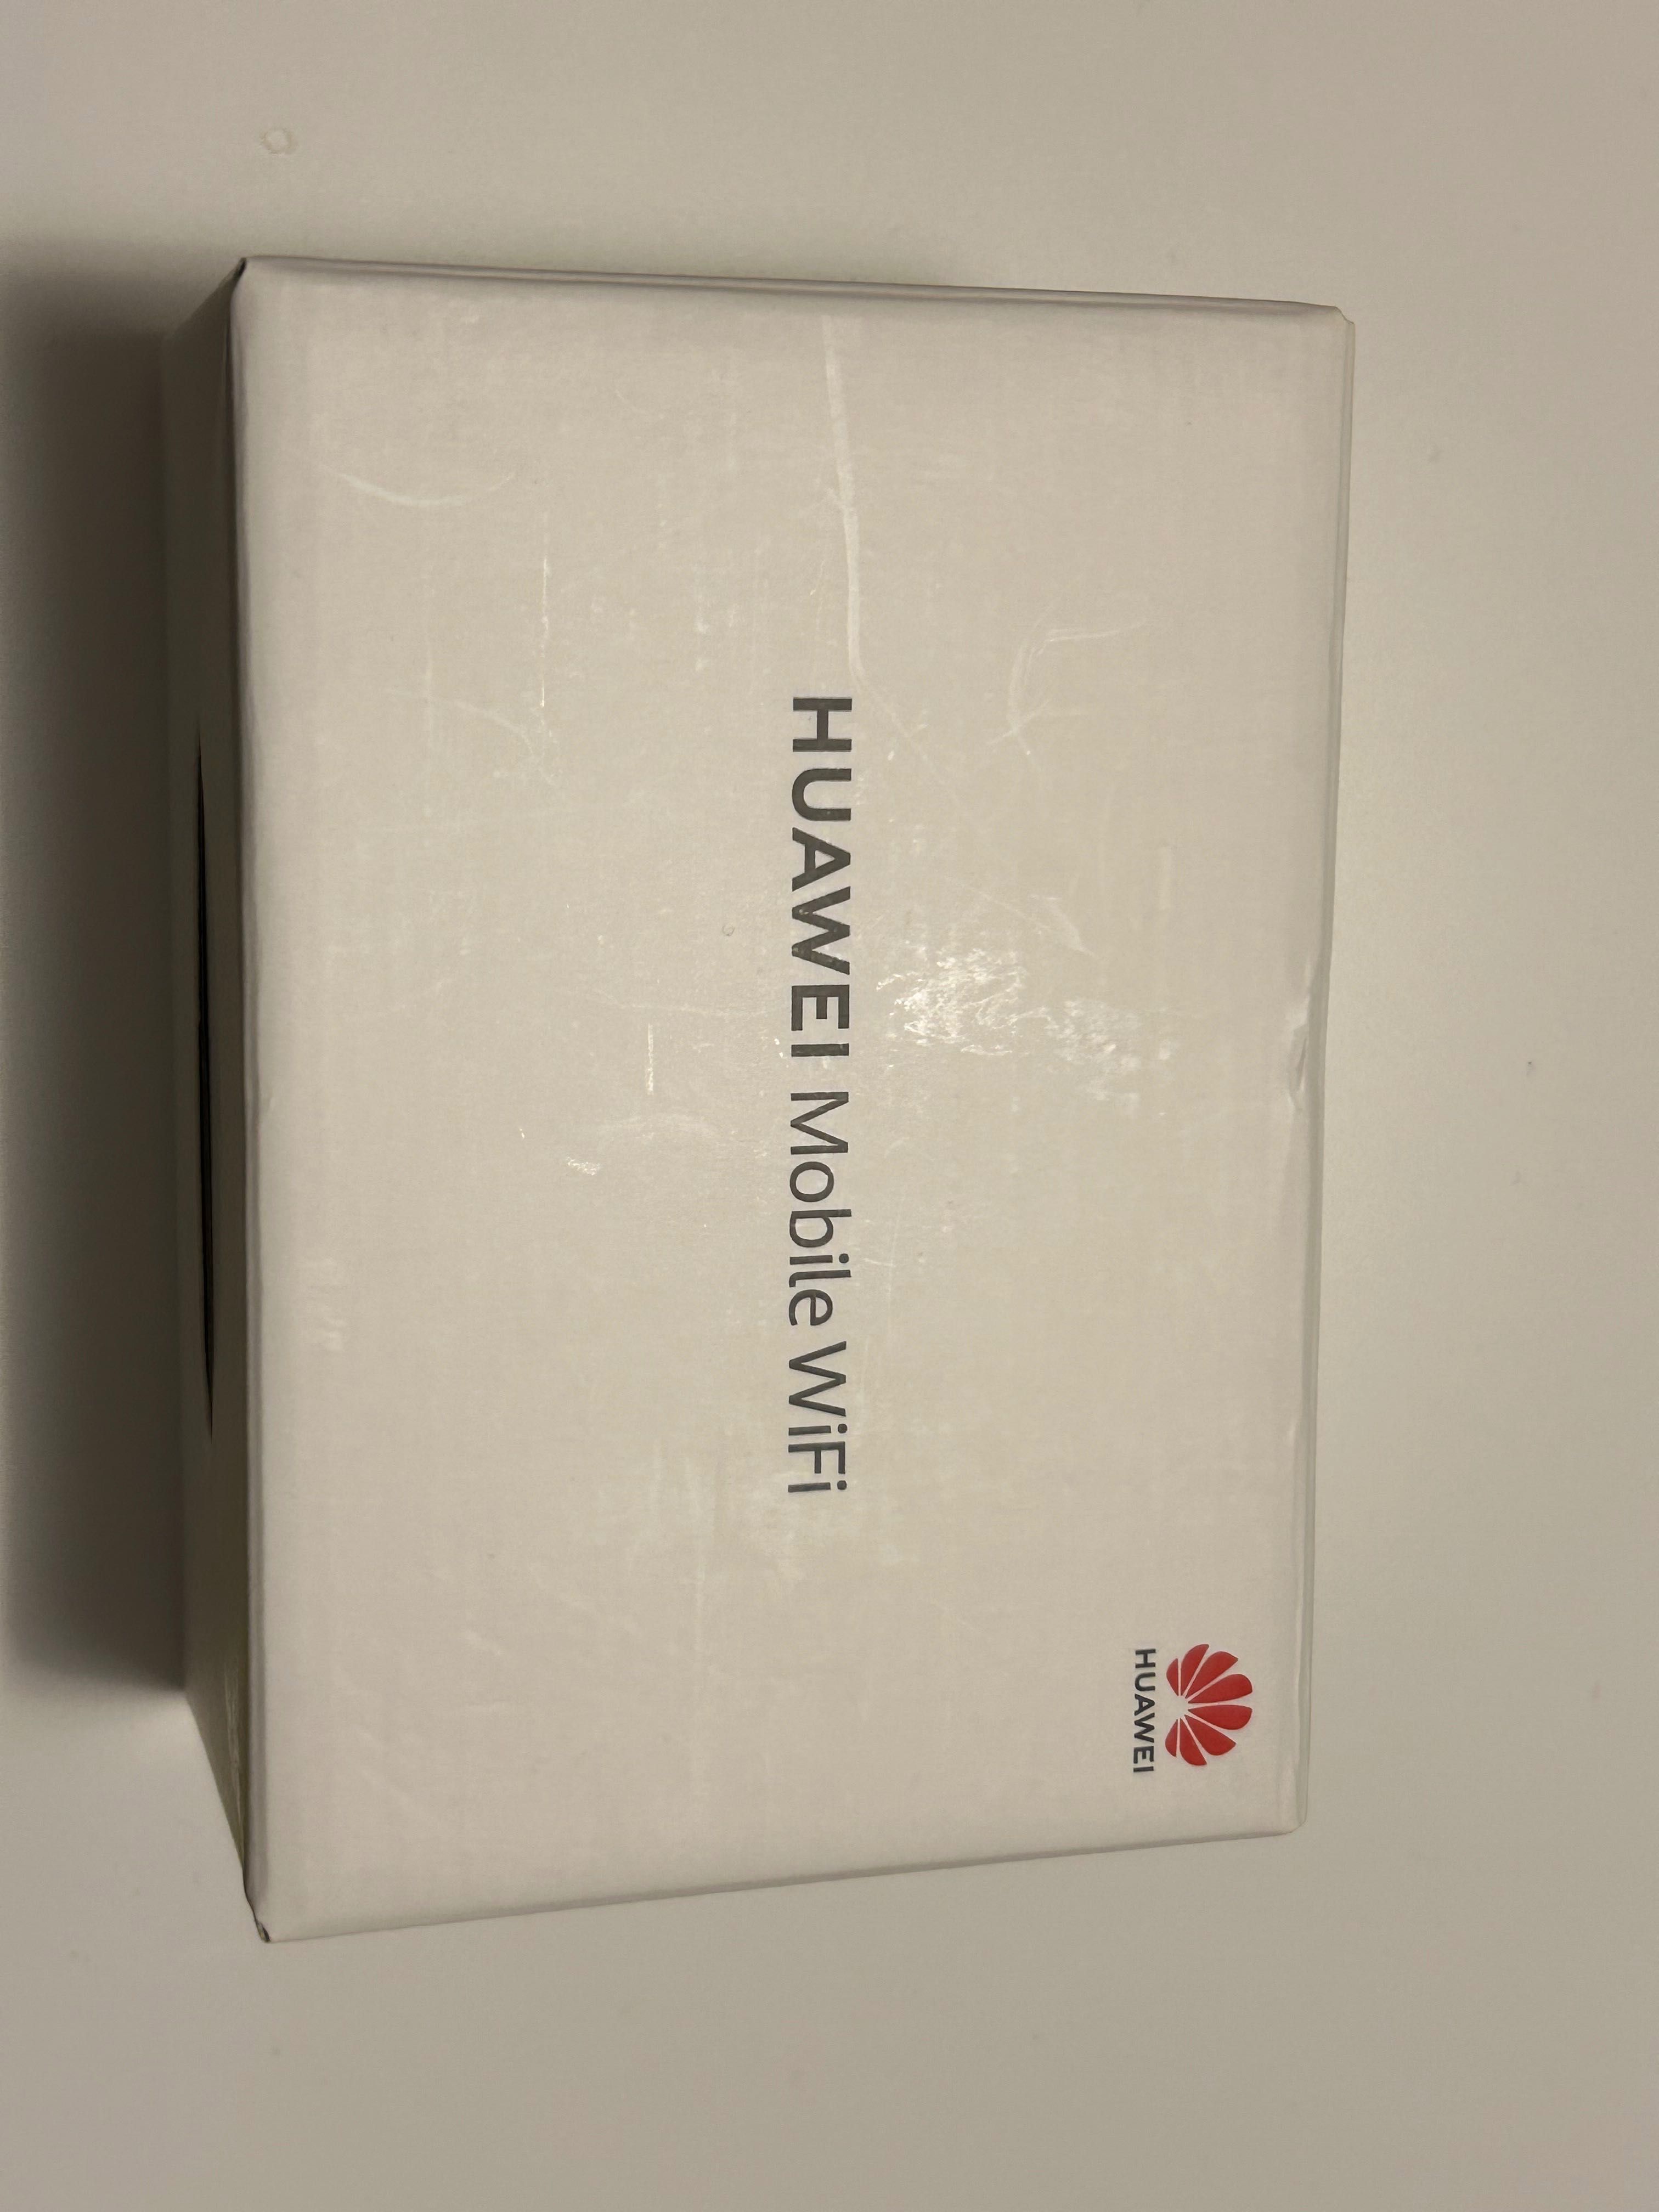 Huawei mobile wifi model e5783b-230